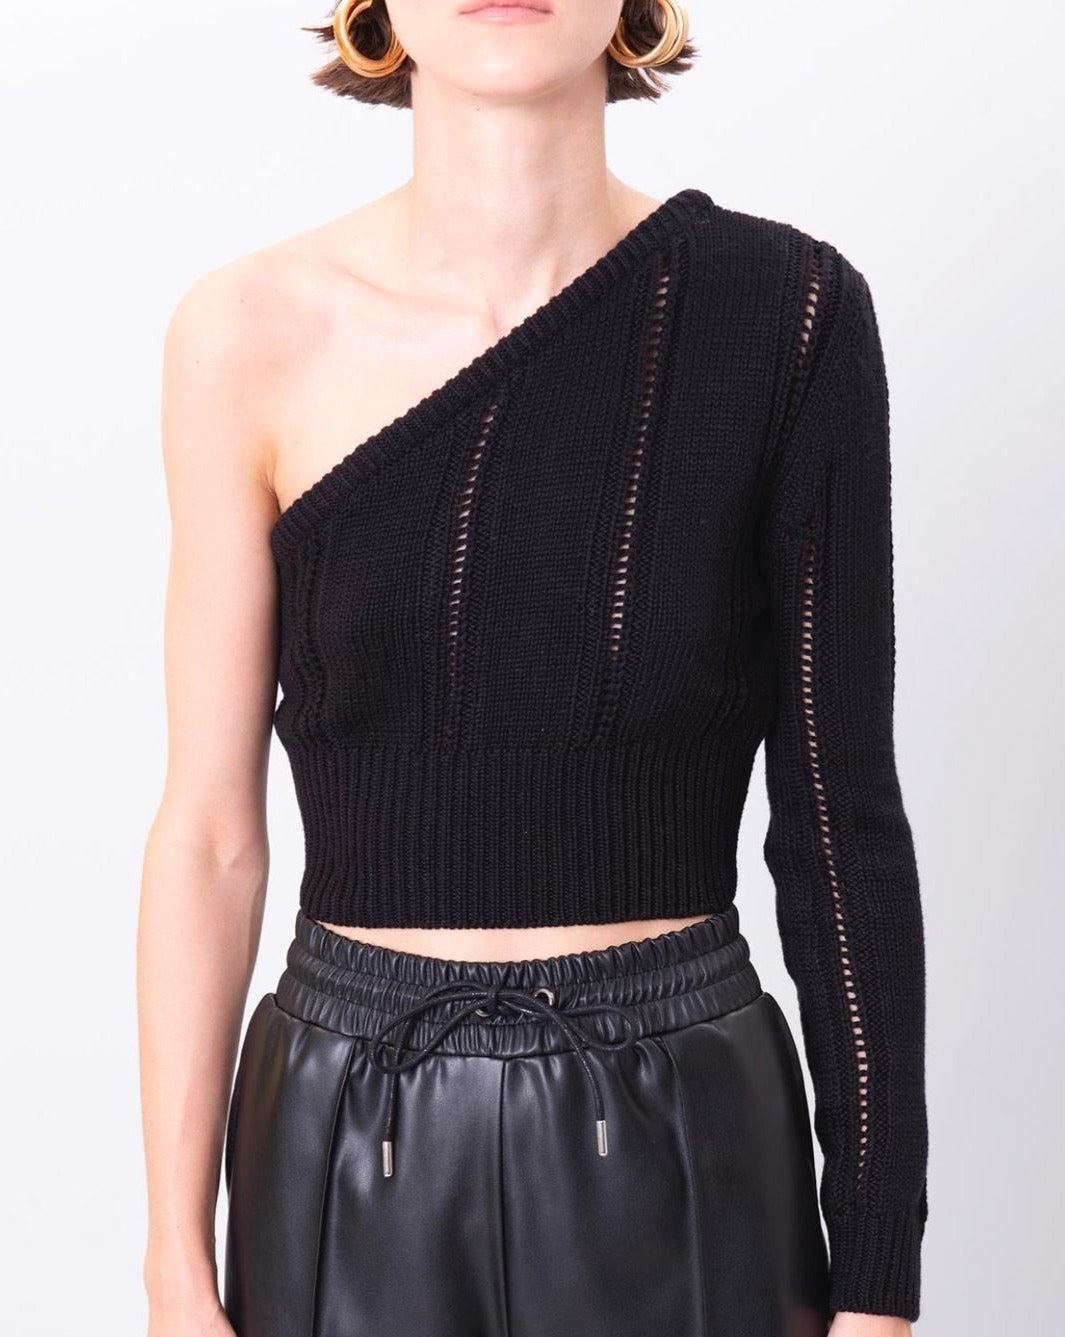 Дамски пуловер BELLA  https://bvseductive.com/products/дамски-пуловер-bella-2  100% акрил атрактивен къс дамски пуловер с един ръкав в черен цвят тренди предложение за вашата визия